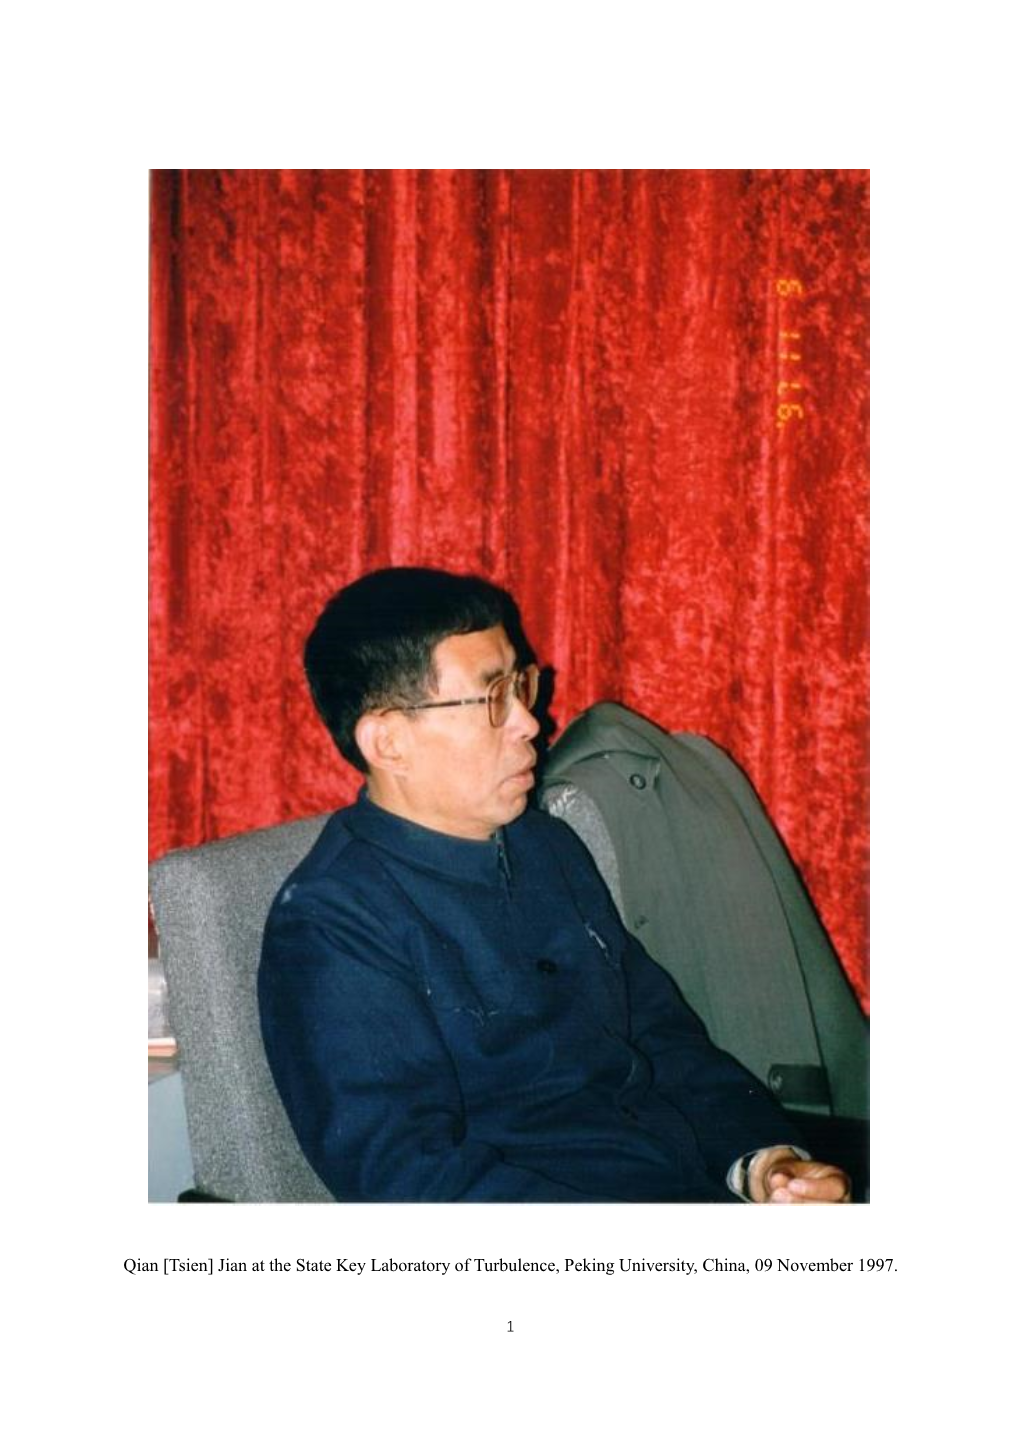 Qian [Tsien] Jian at the State Key Laboratory of Turbulence, Peking University, China, 09 November 1997